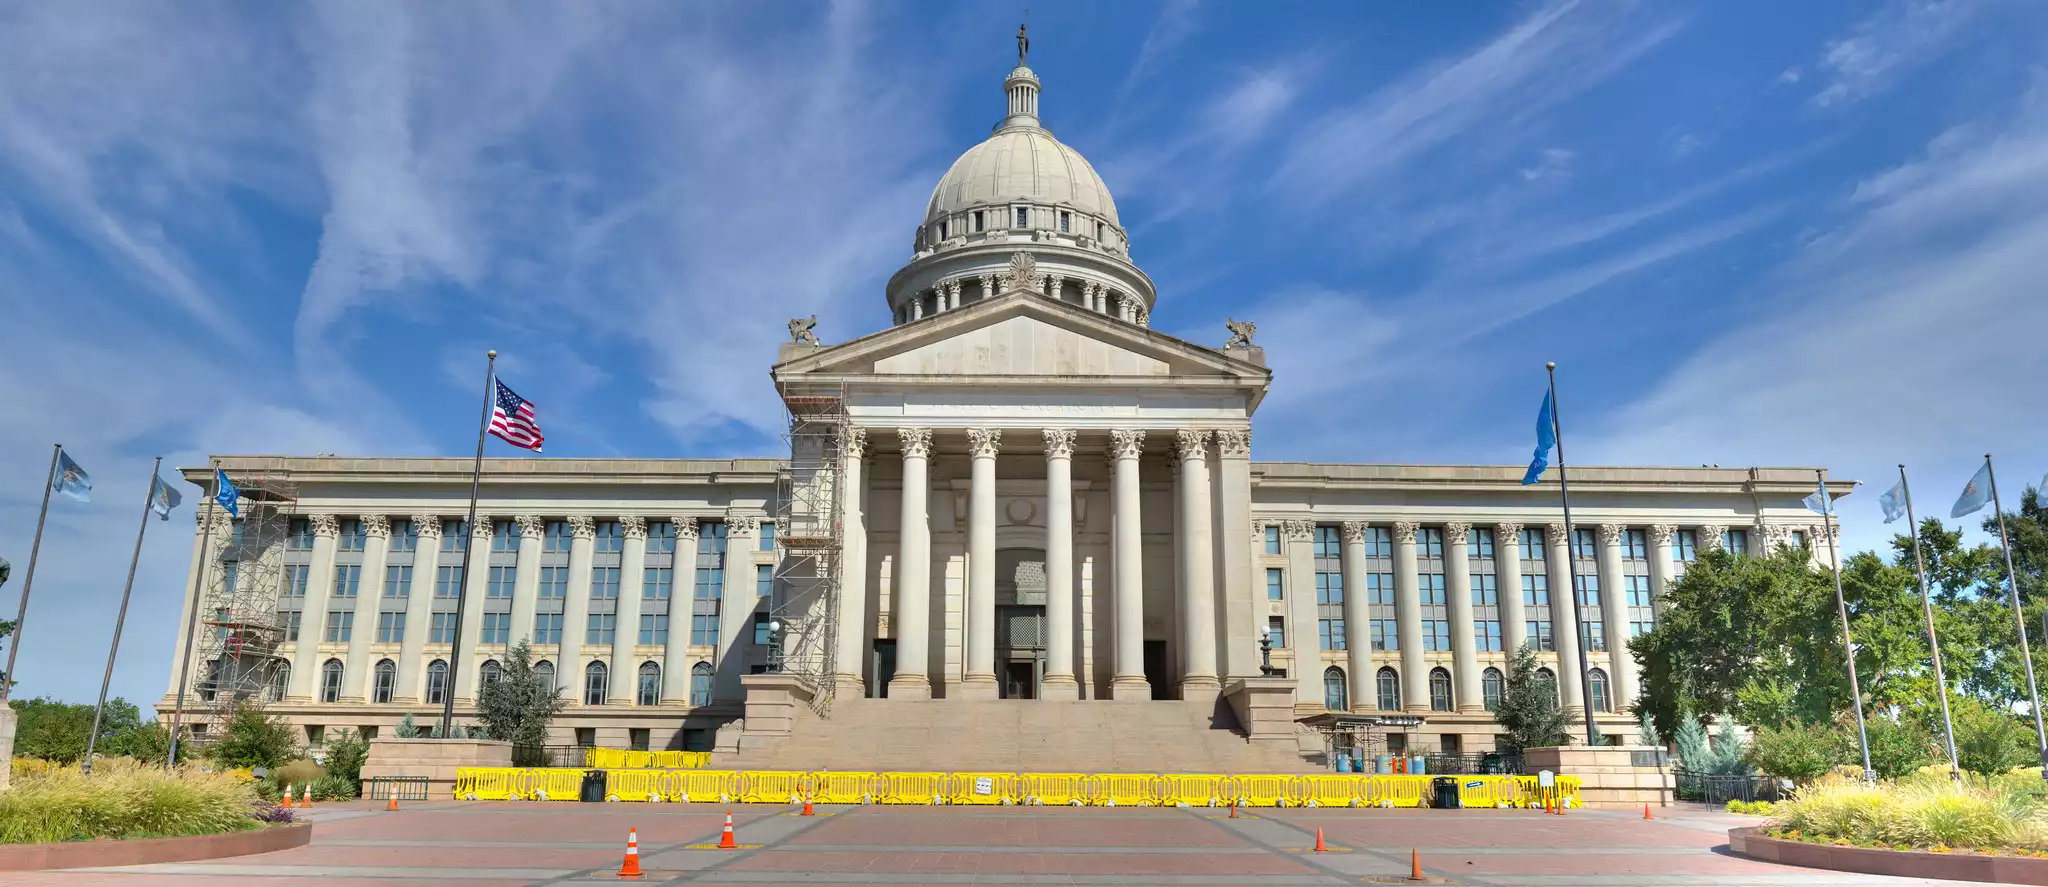 Oklahoma State Capitol (Panorama)